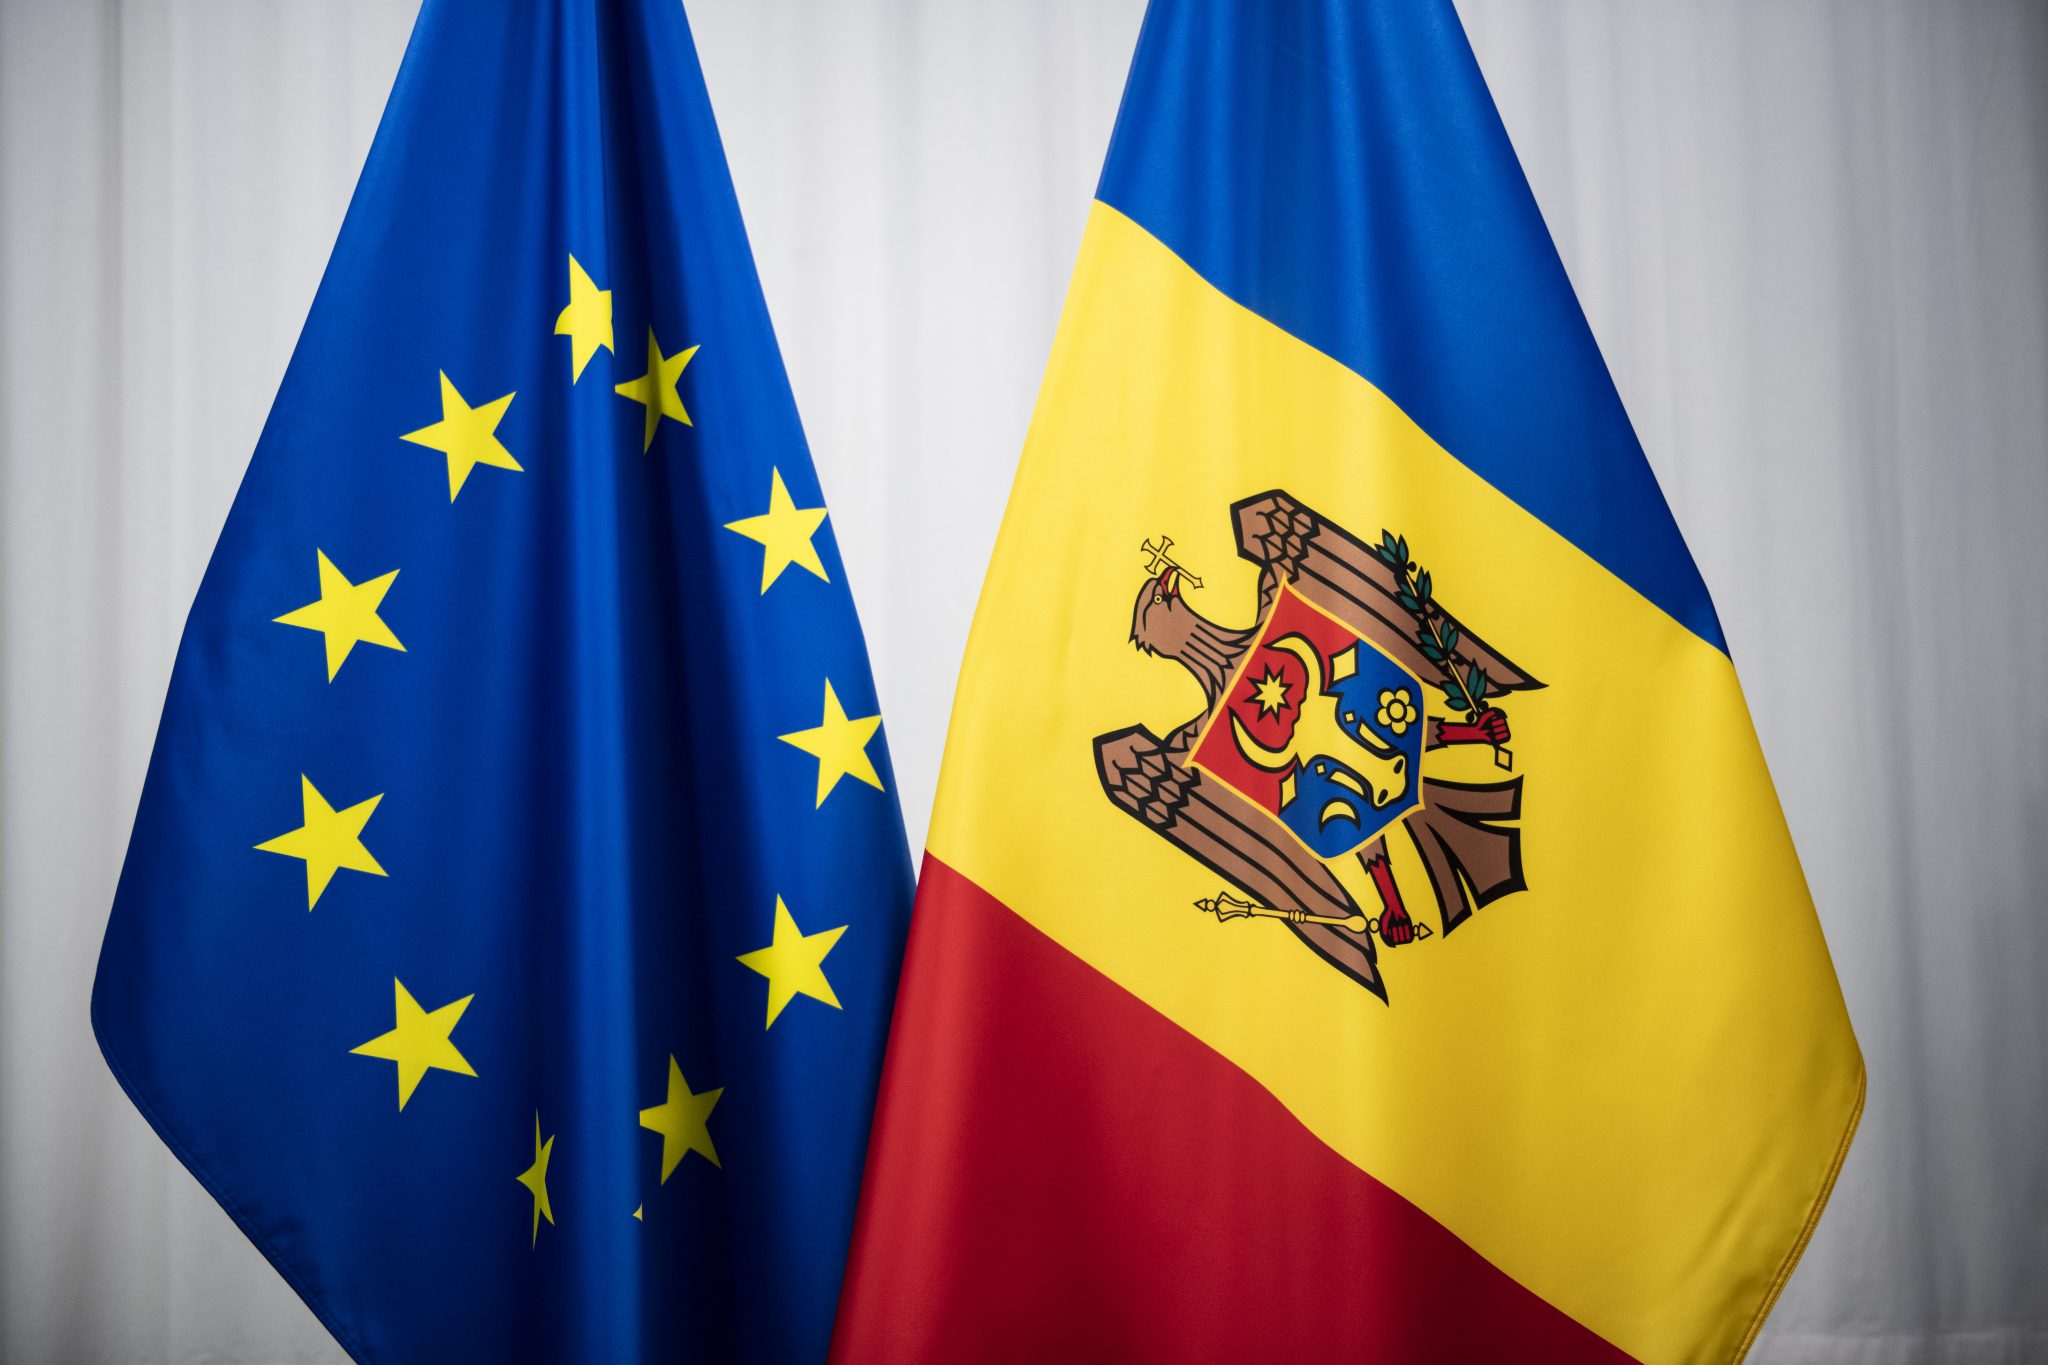 Ne mișcăm lent – Moldova a reușit să implementeze doar 3 din cele 9 condiționalități ale Comisiei Europene – Unde ne-am împotmolit